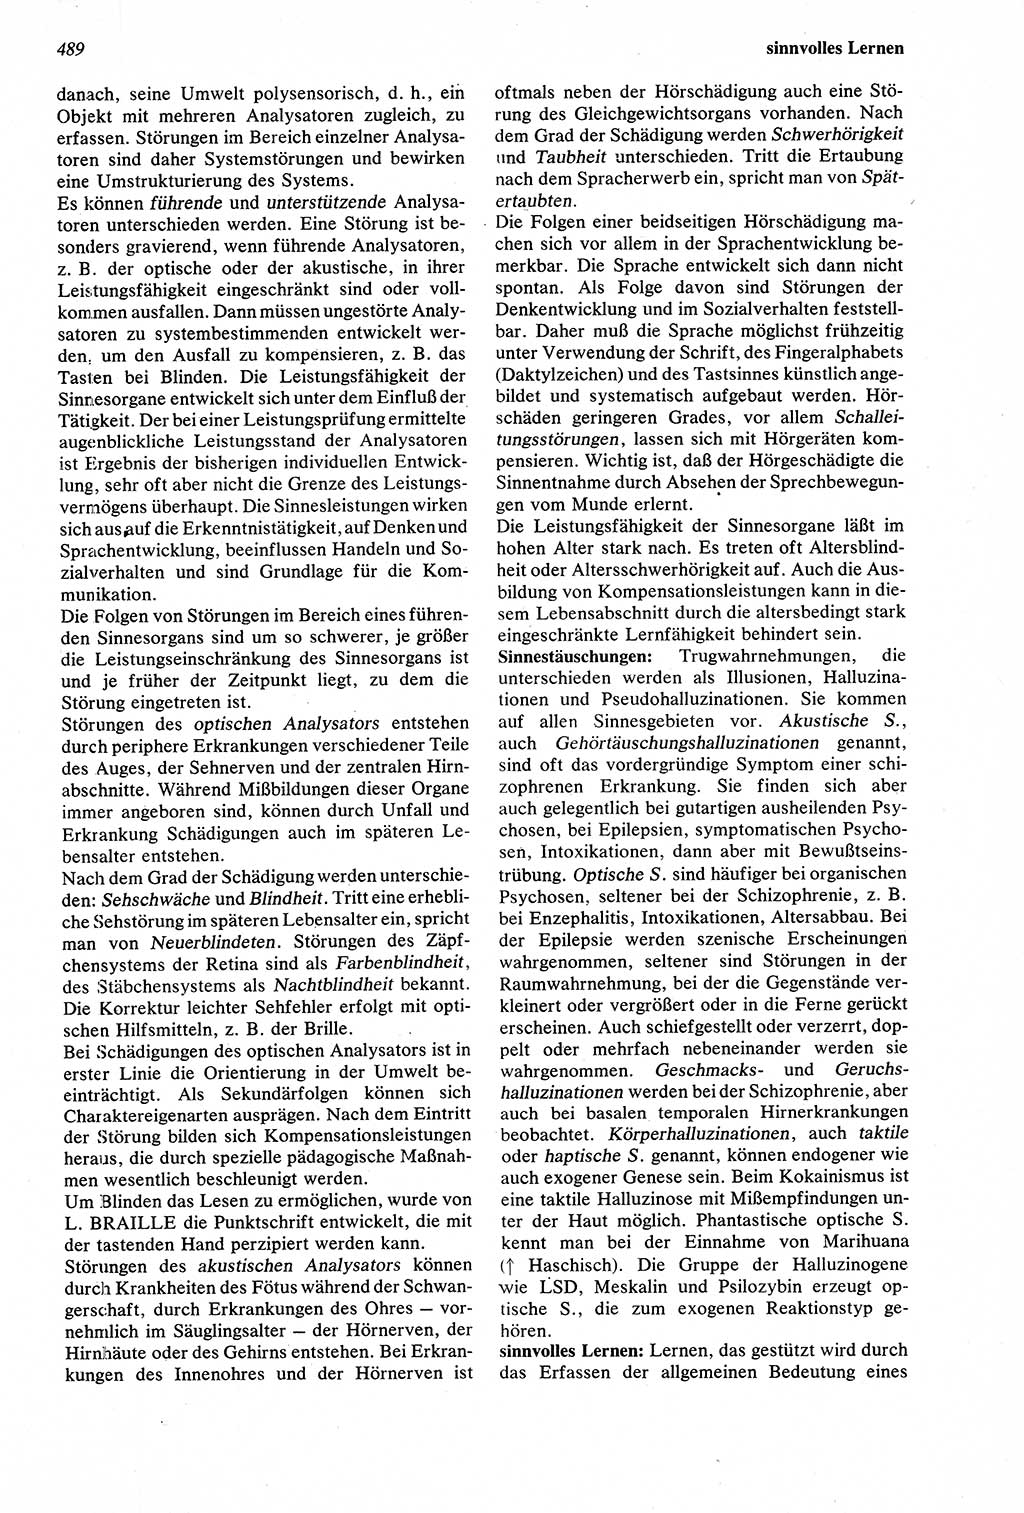 Wörterbuch der Psychologie [Deutsche Demokratische Republik (DDR)] 1976, Seite 489 (Wb. Psych. DDR 1976, S. 489)